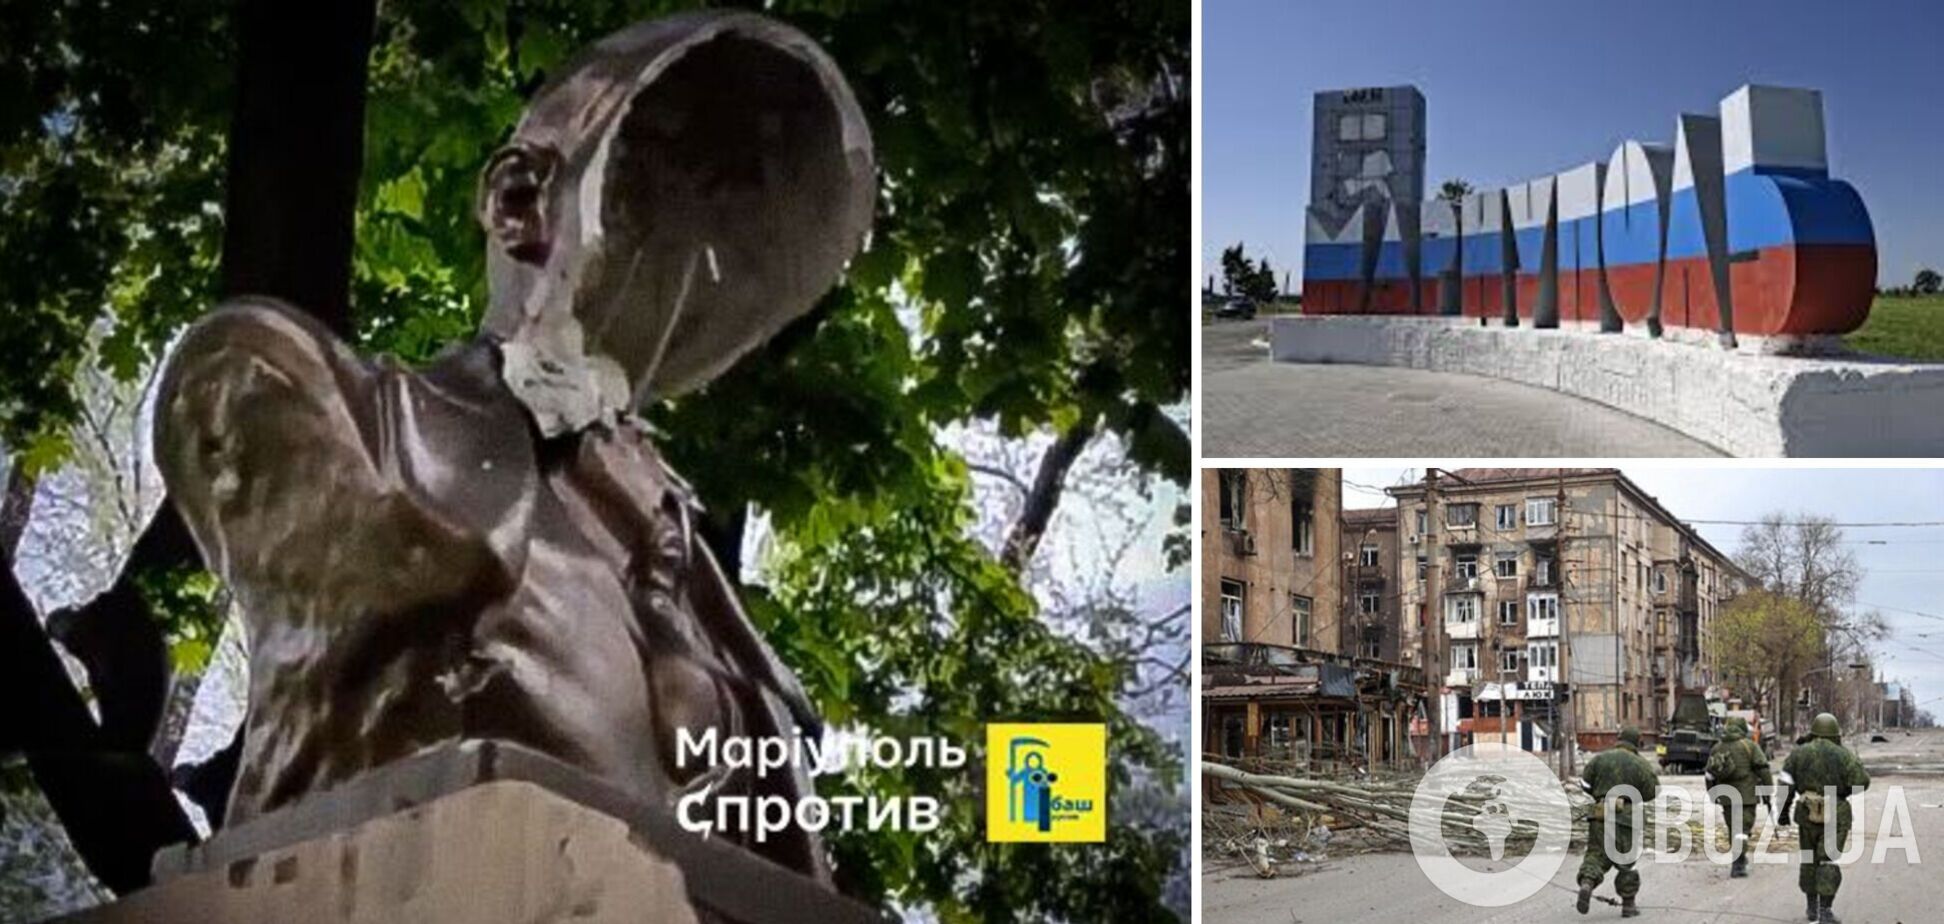 Декомунізація триває: в окупованому Маріуполі невідомі знищили монумент Леніну. Фото і відео